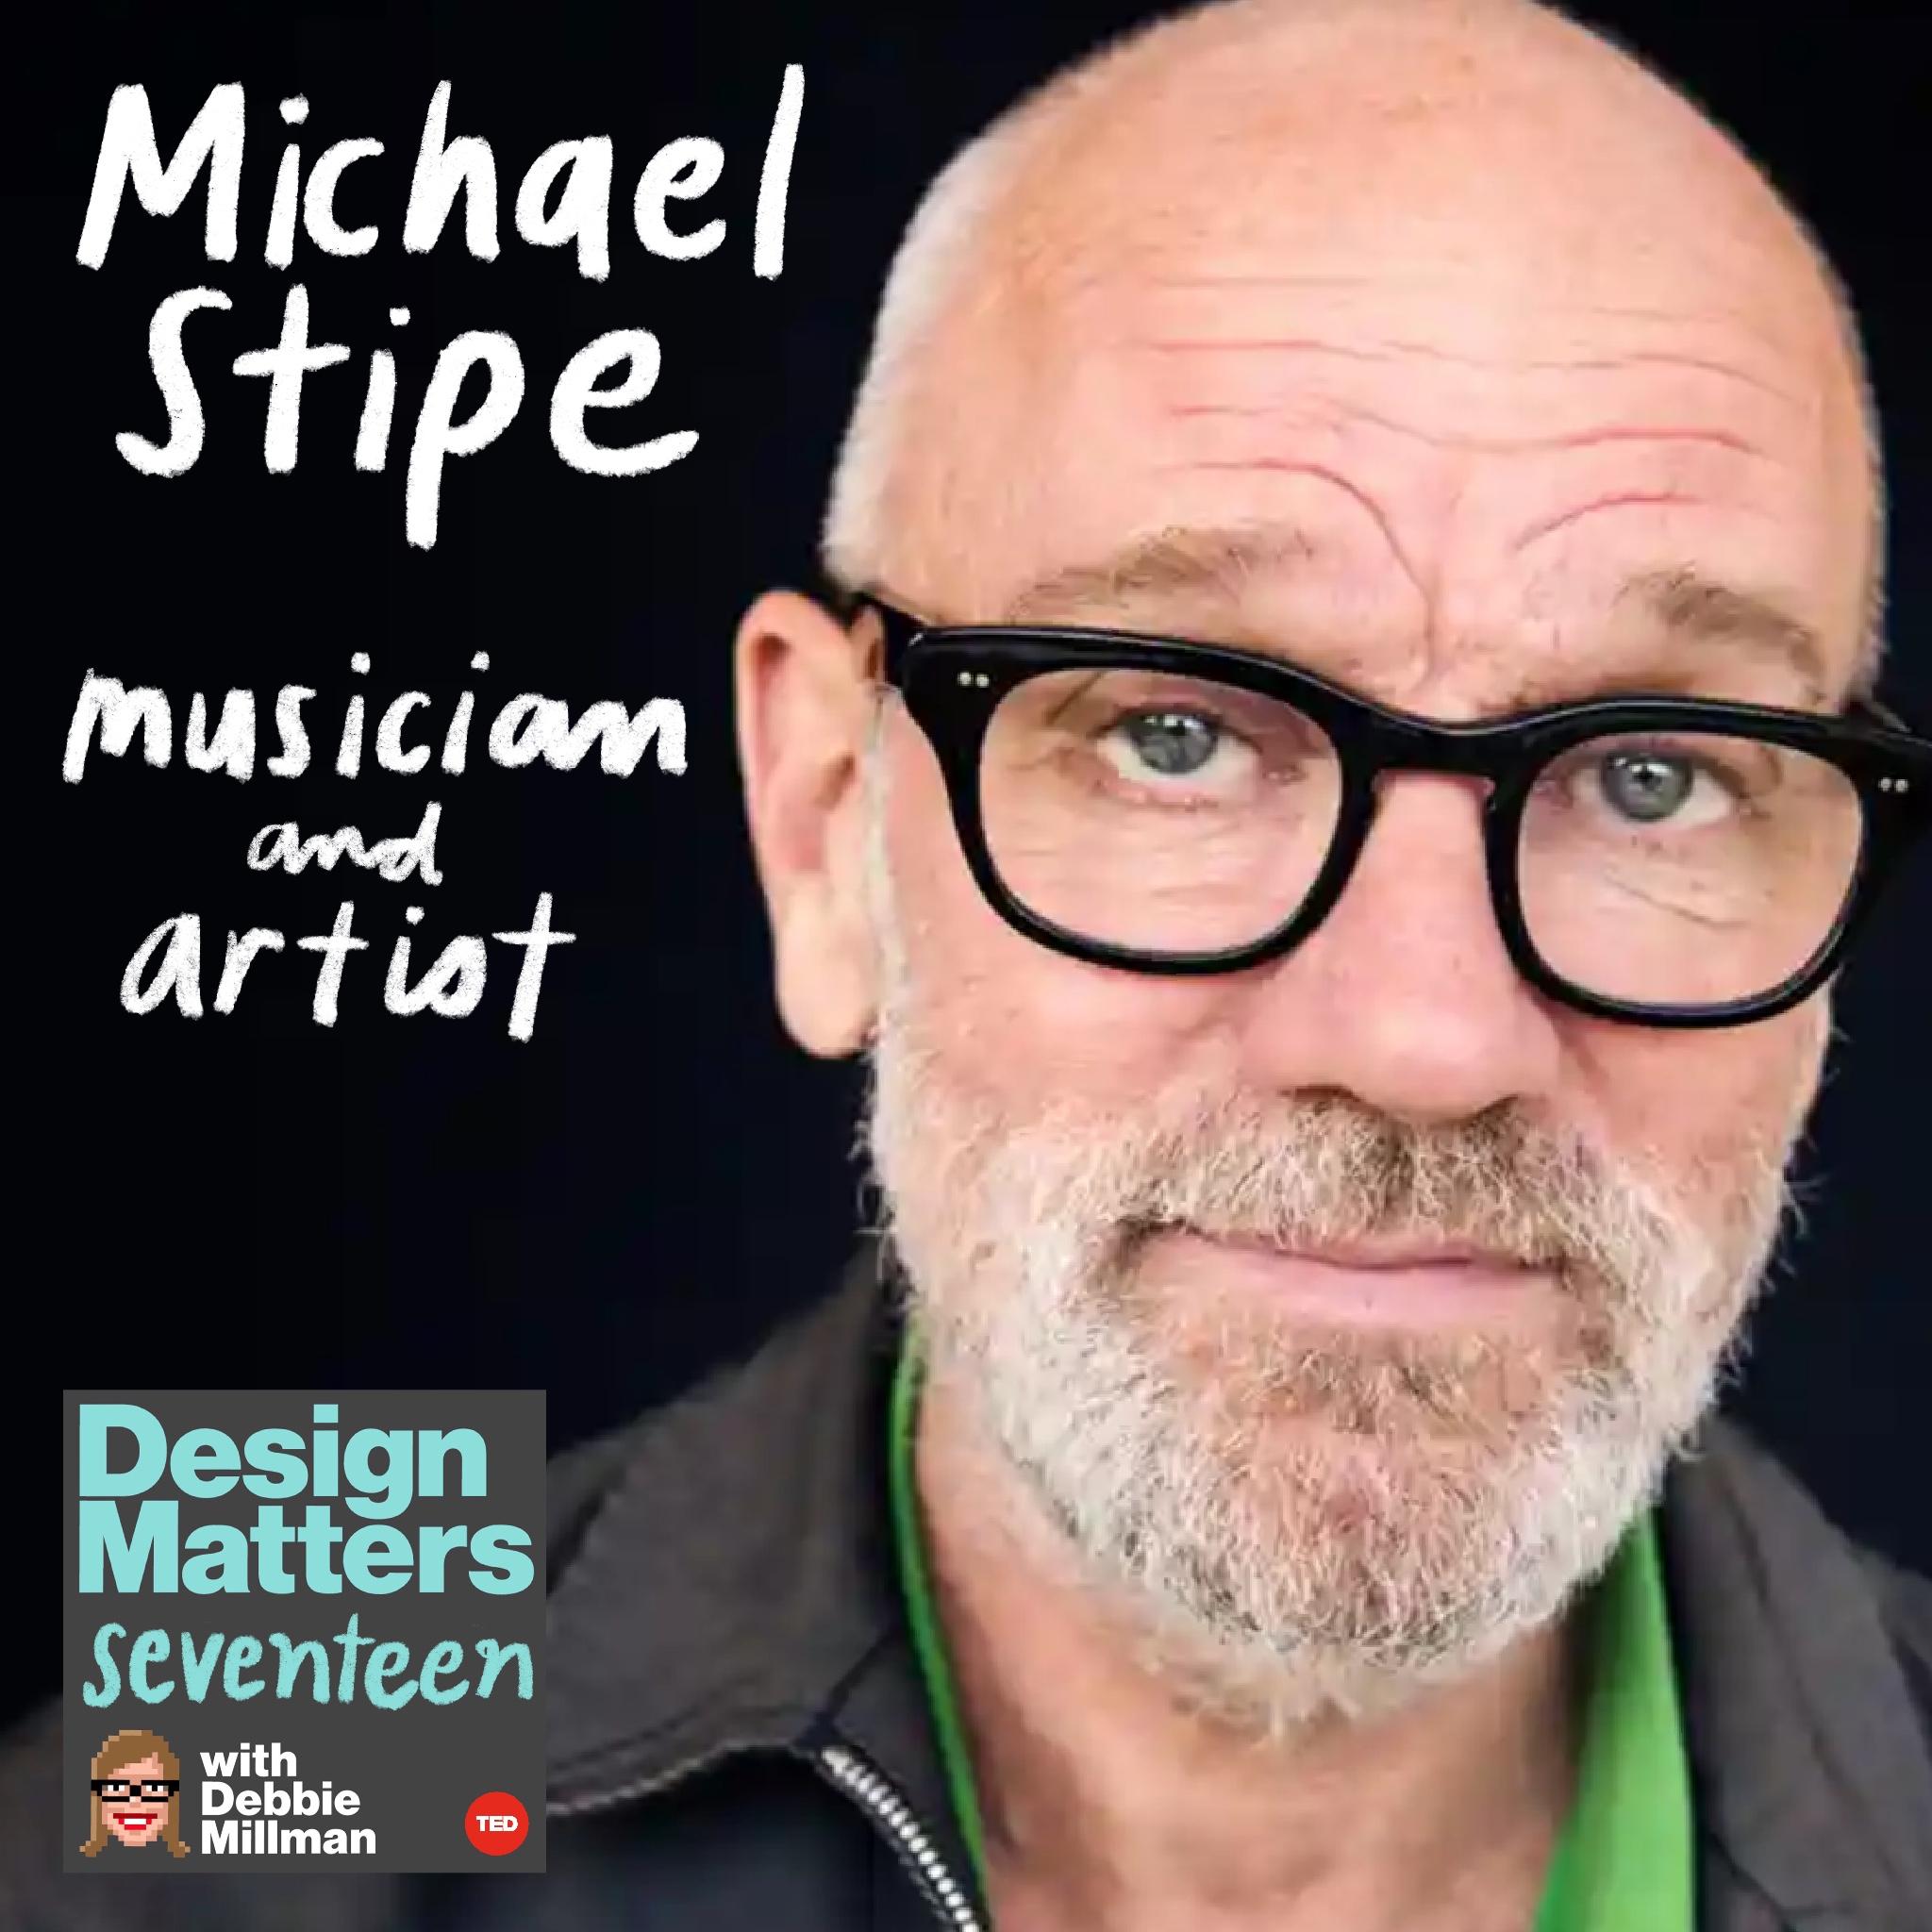 Thumbnail for "Michael Stipe".